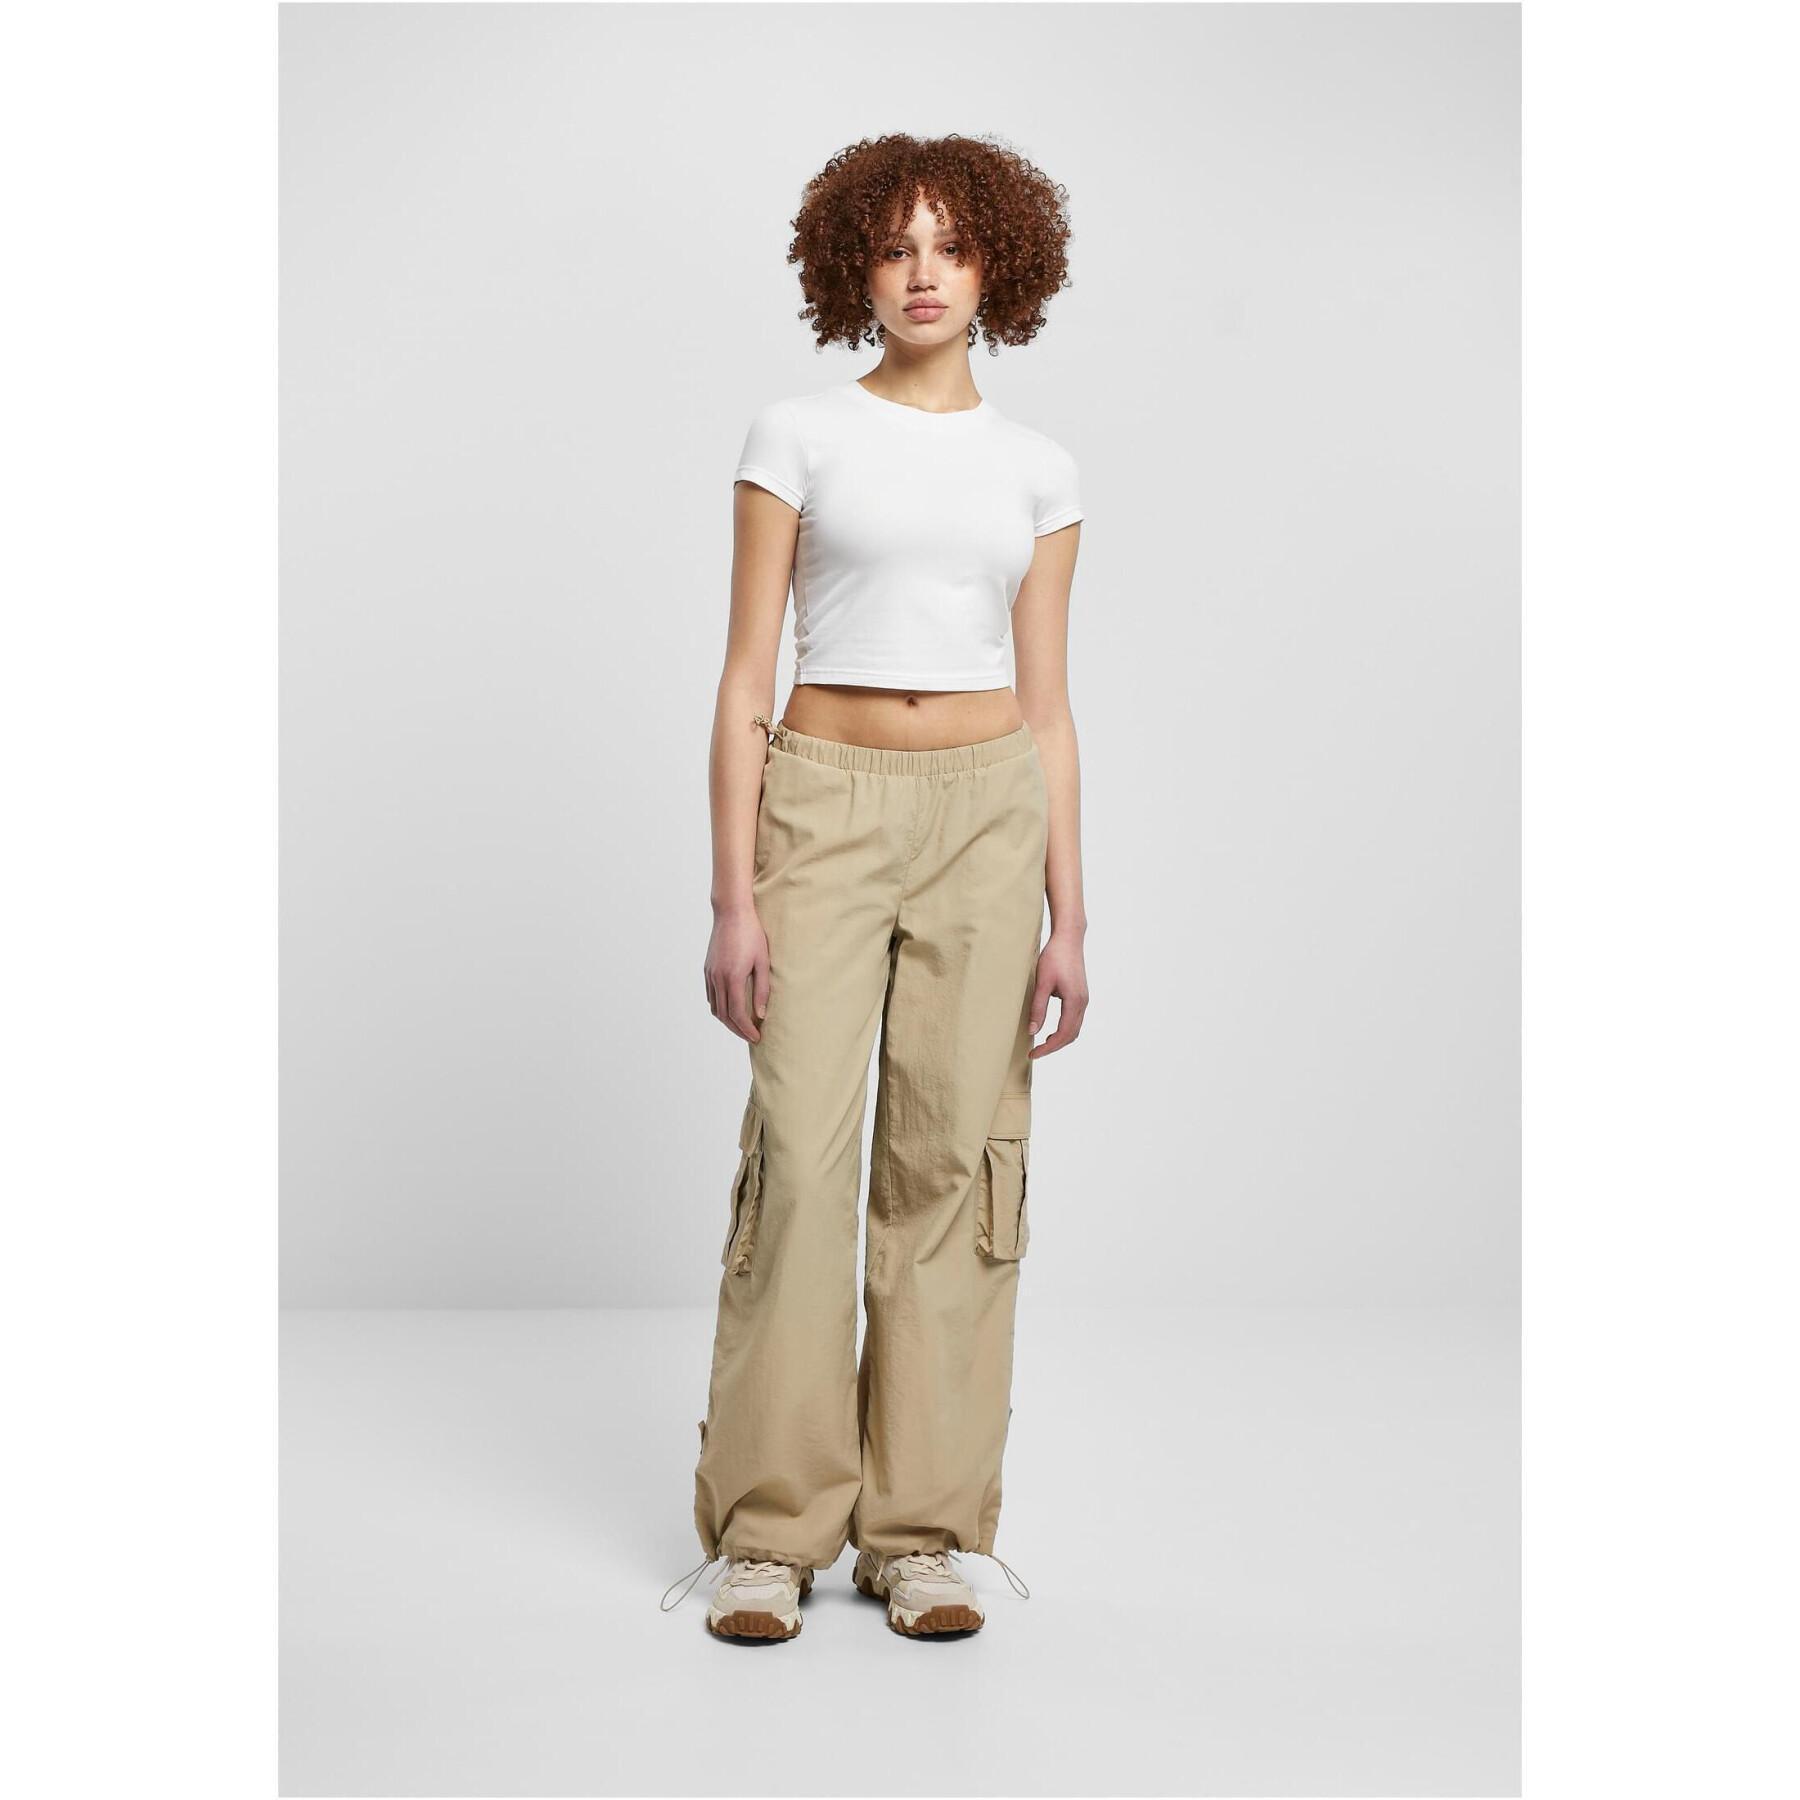 Pantaloni cargo nylon large froissé femme grandes tailles Urban Classics